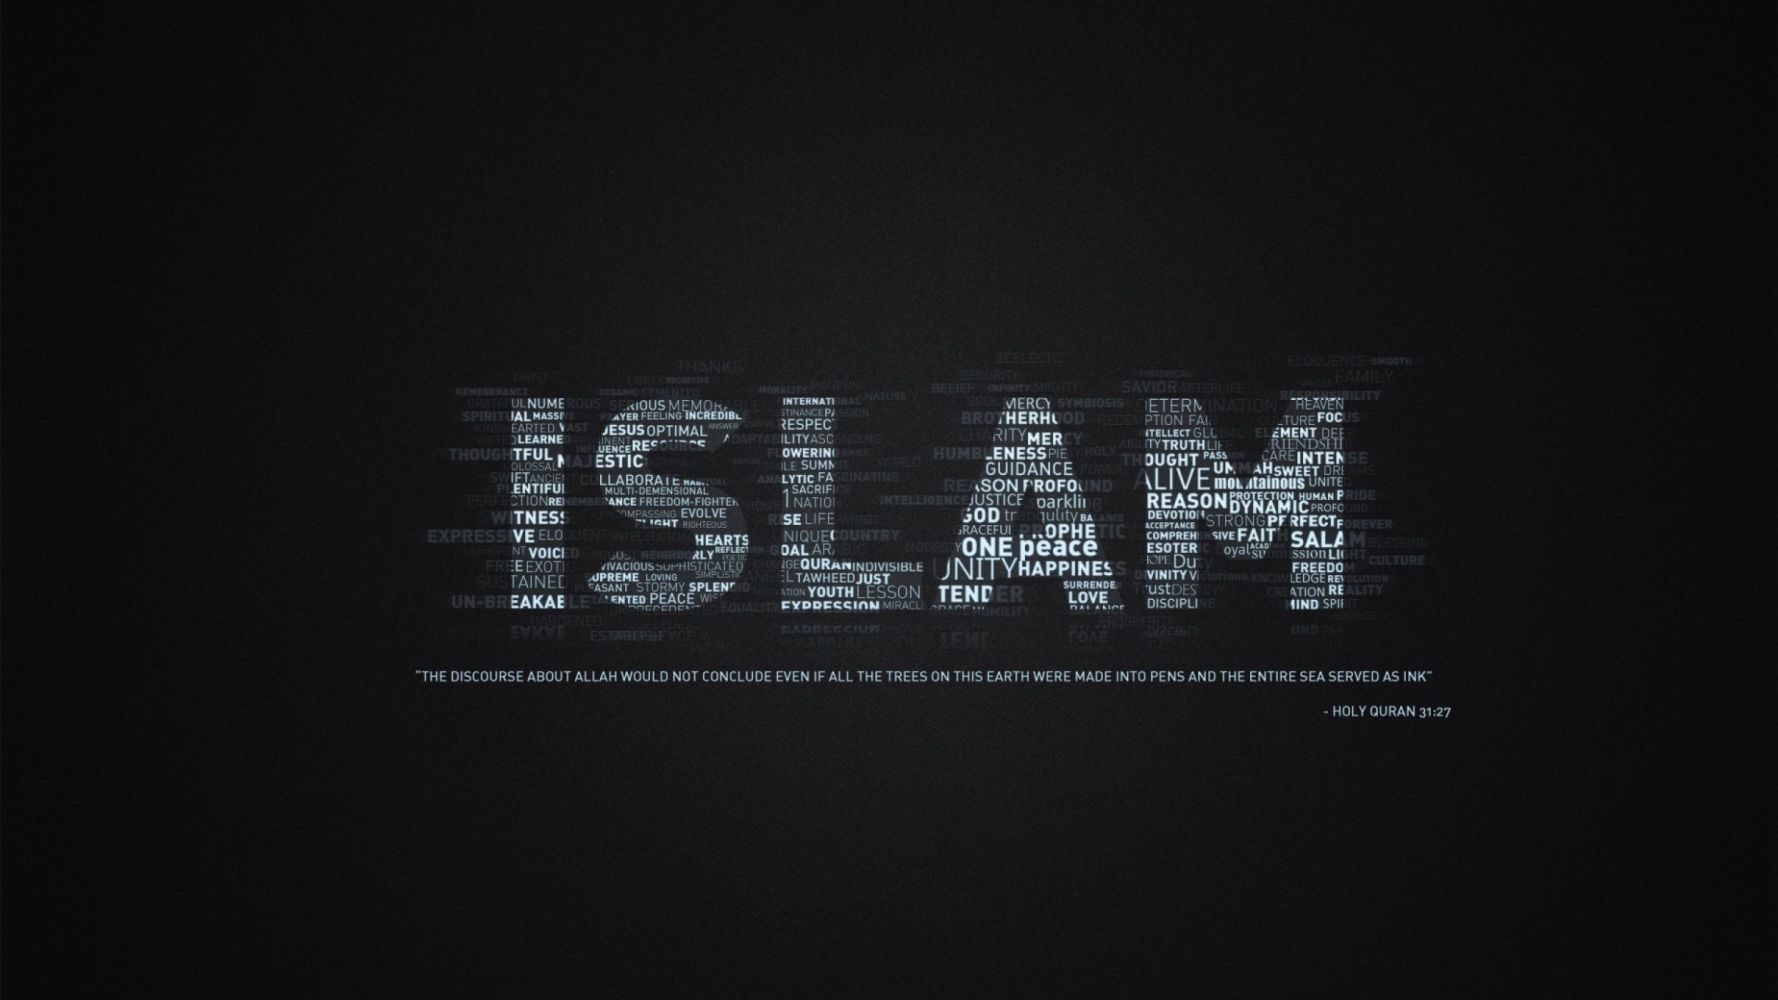 HD Islamic Image